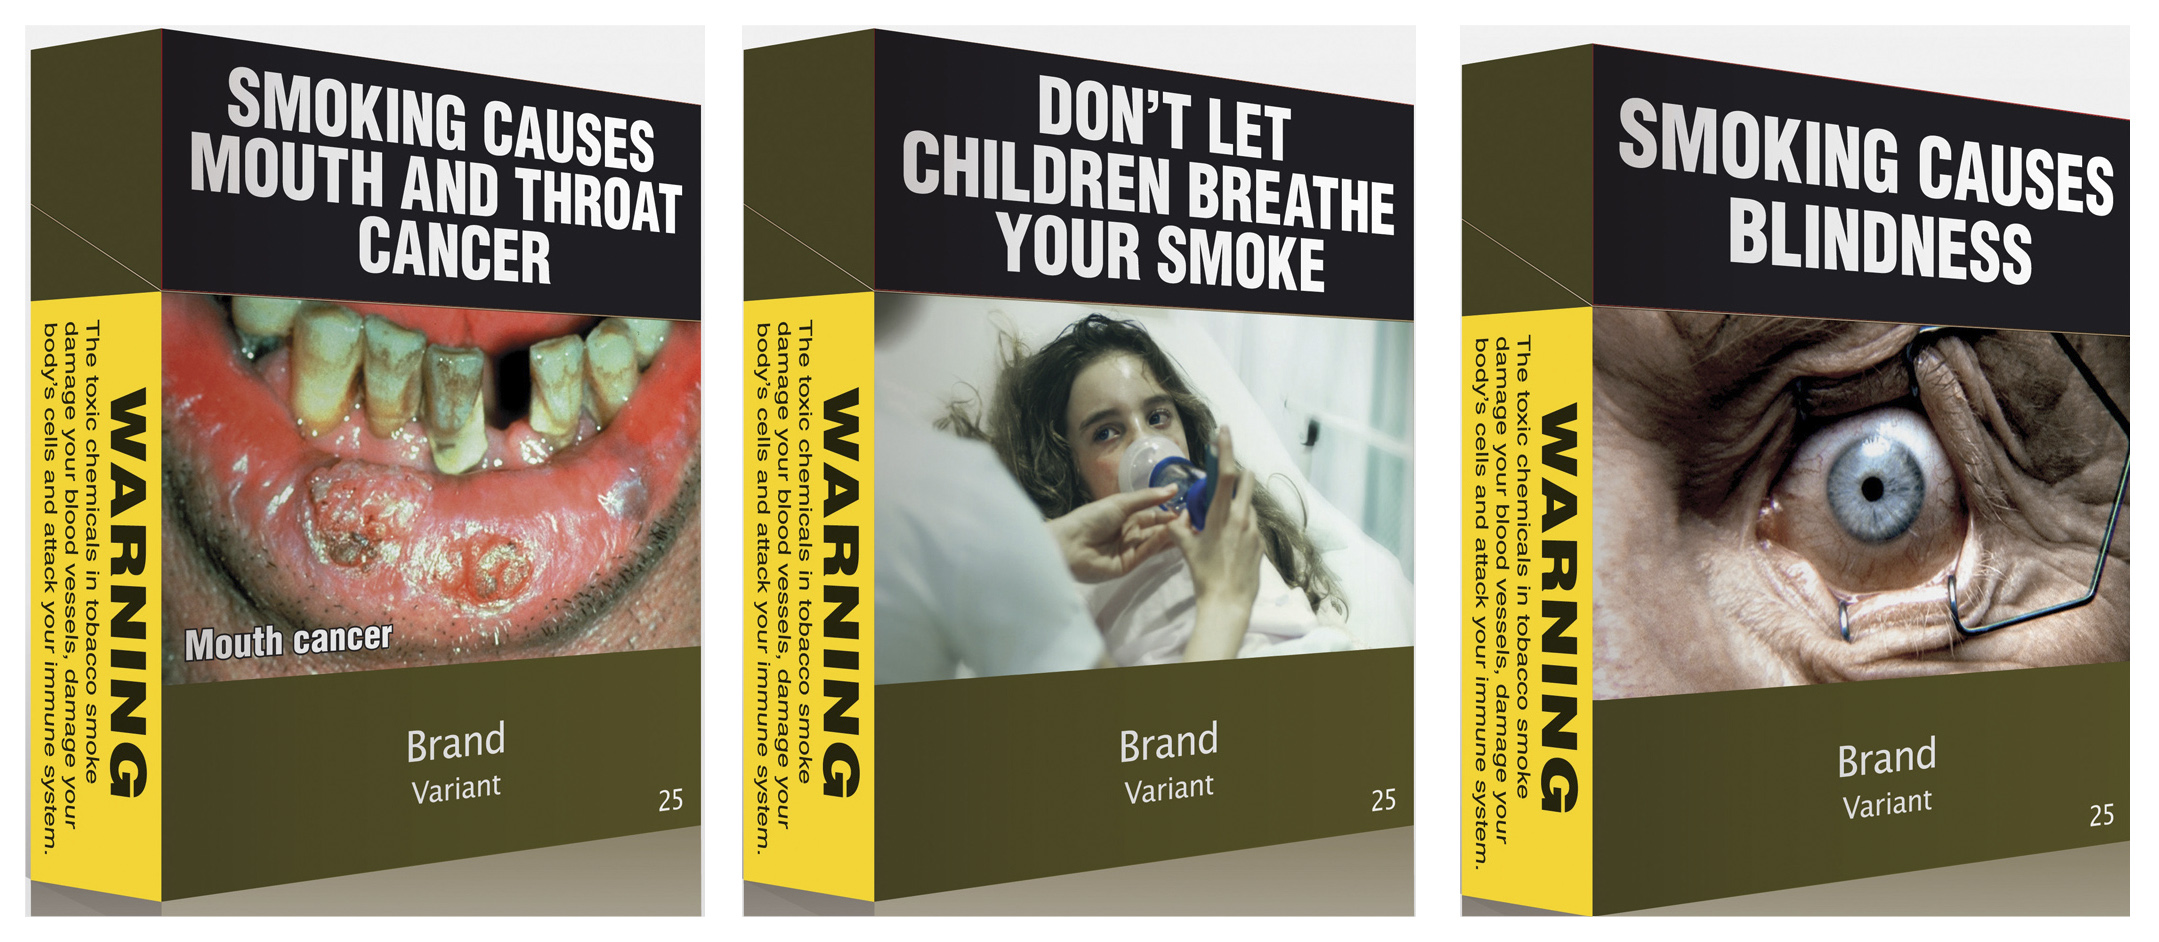 Ανεπηρέαστοι οι έφηβοι από τα μηνύματα των νέων πακέτων τσιγάρων